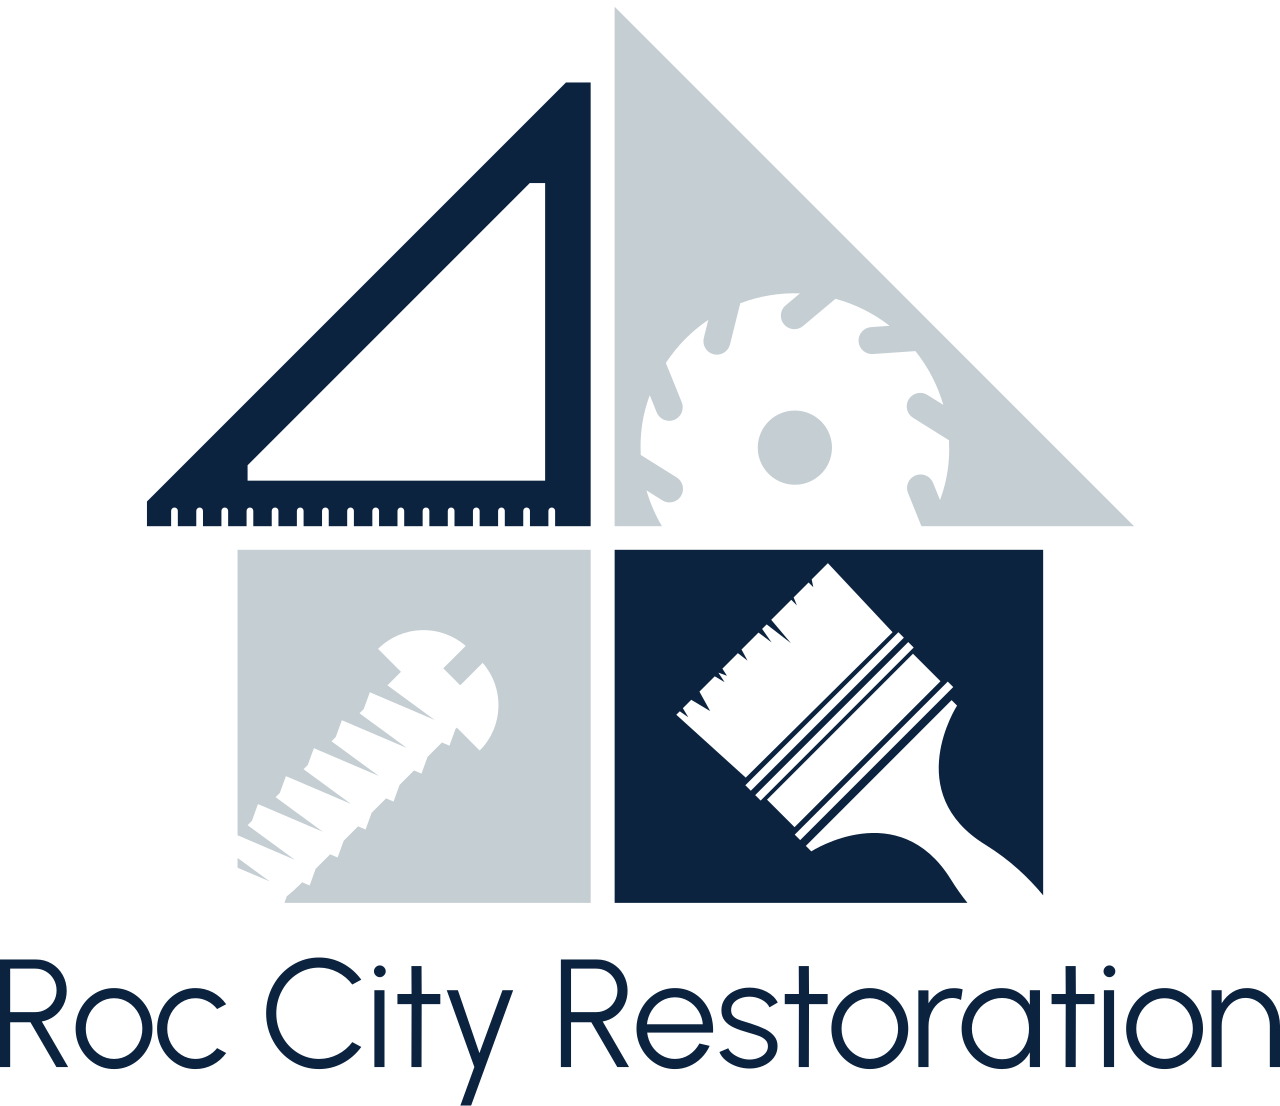 Roc City Restoration's web page